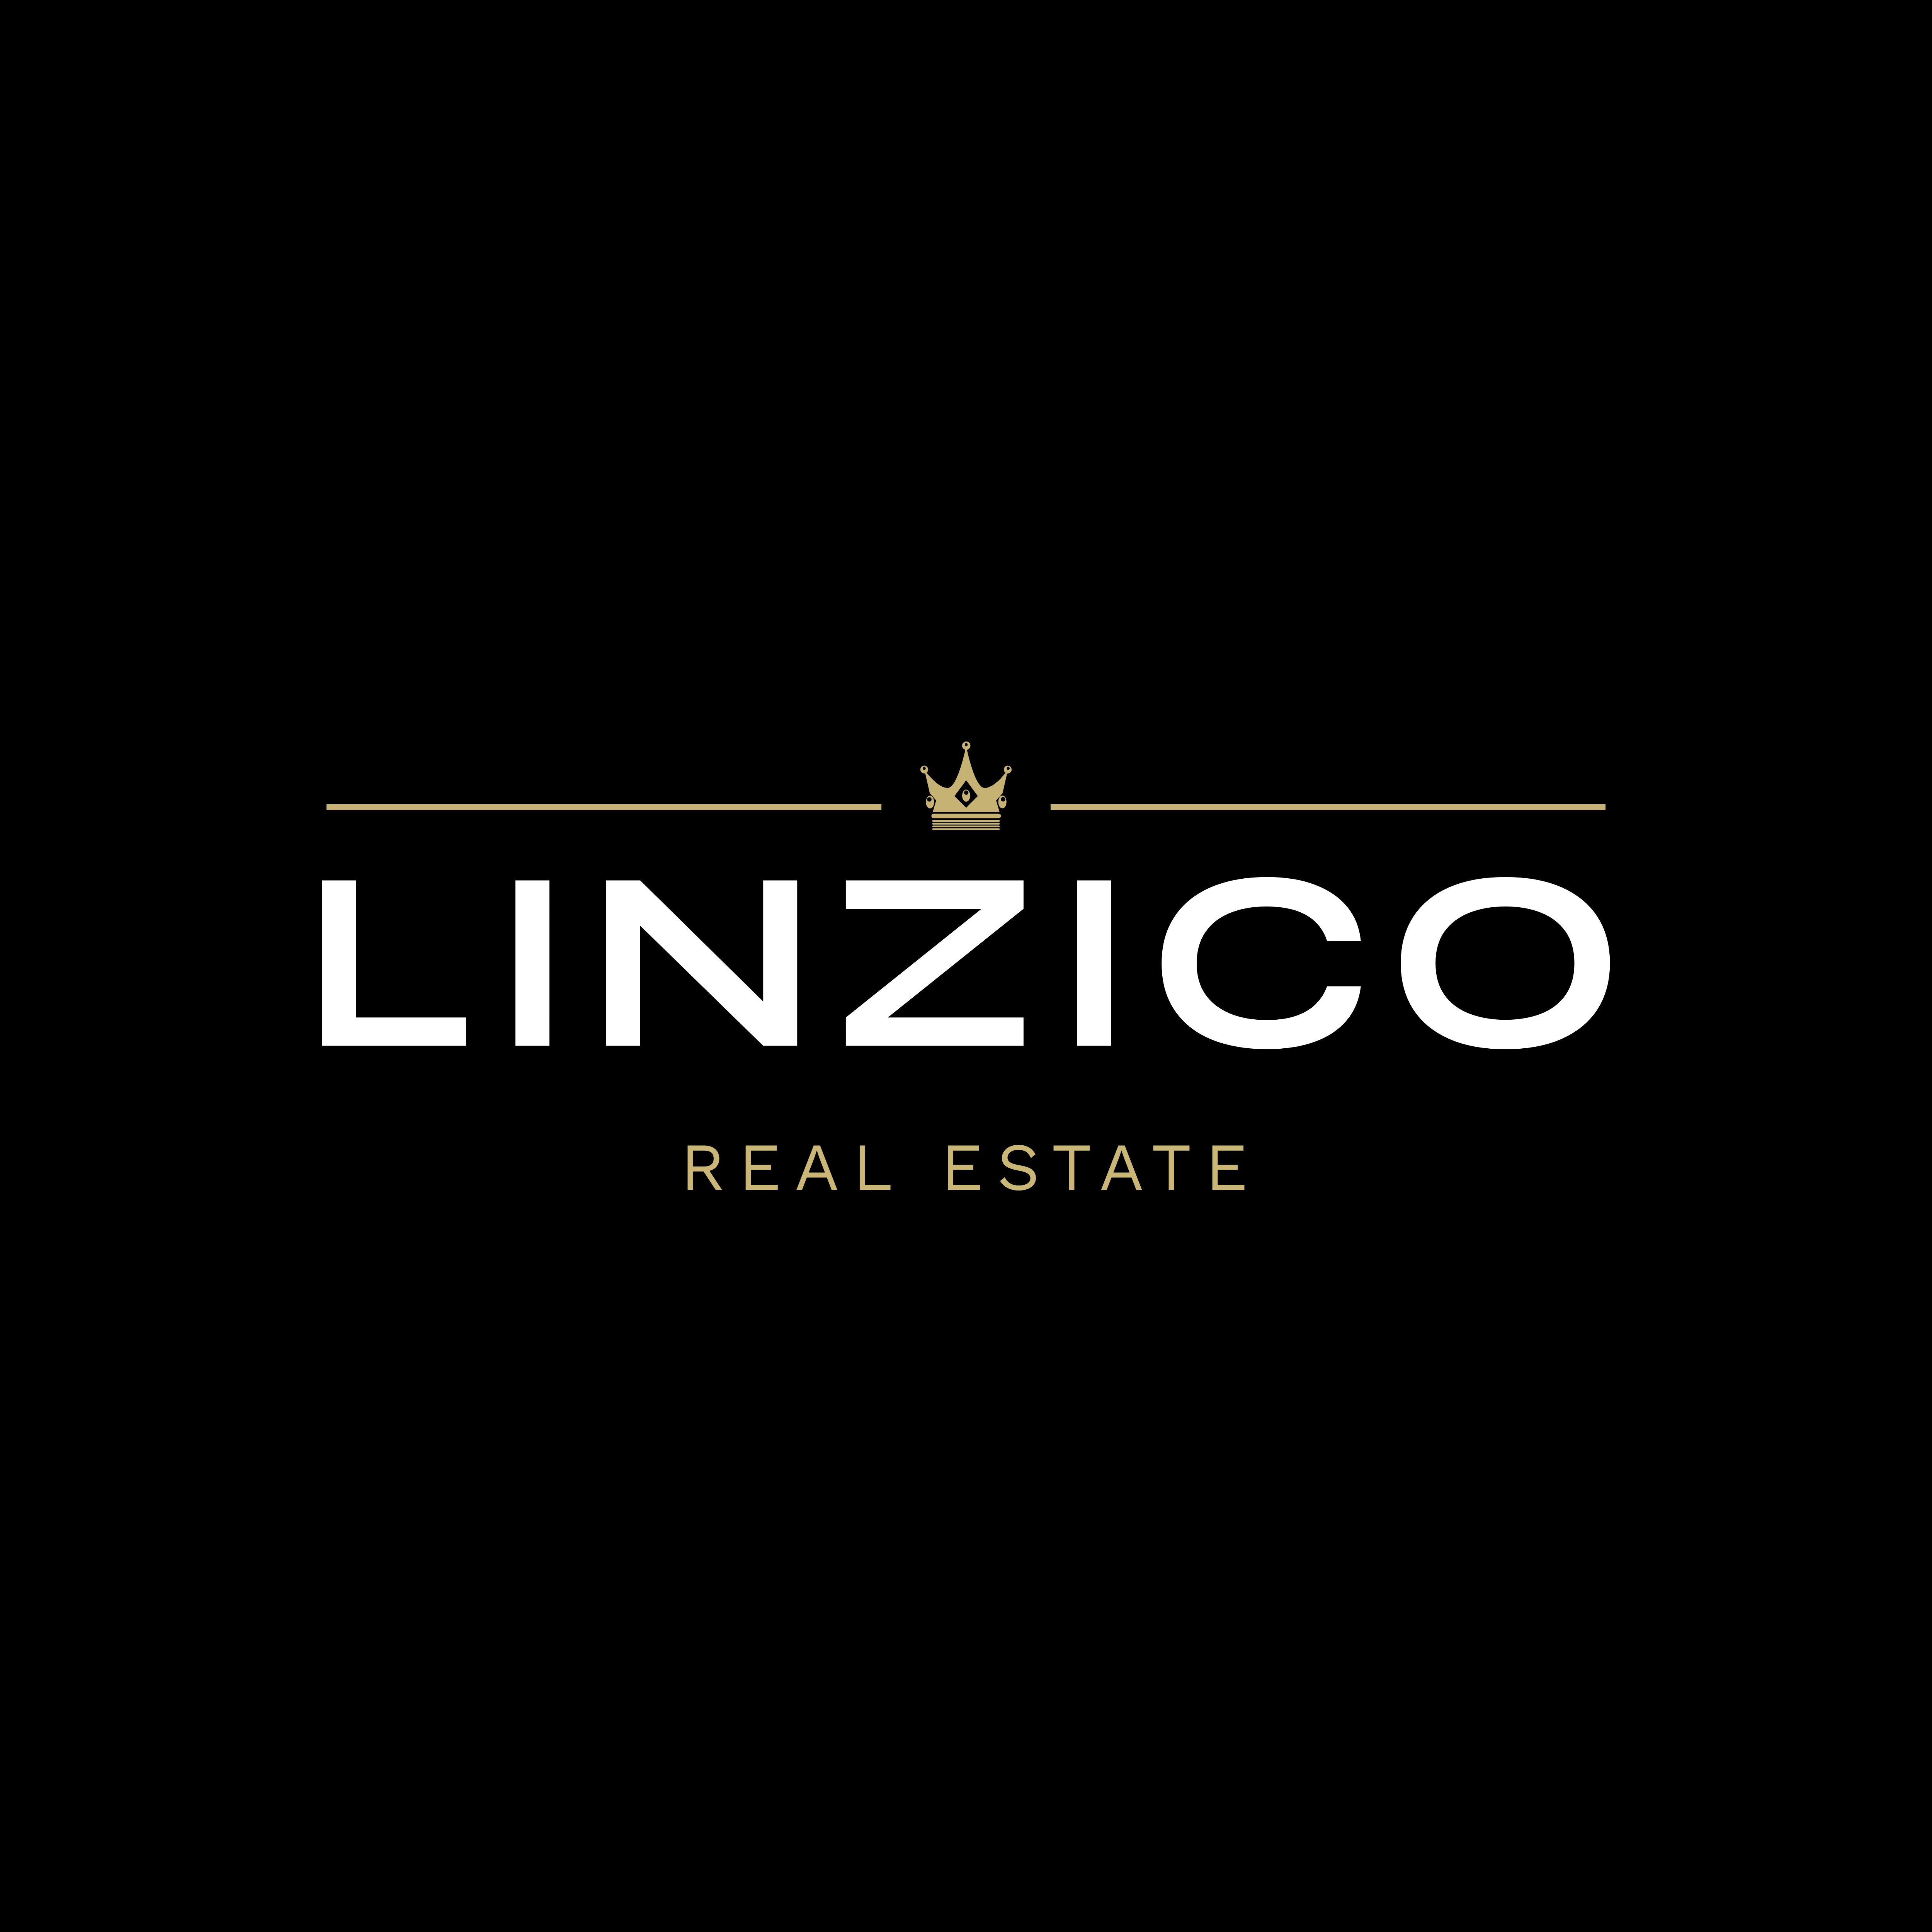 Linzico Real Estate